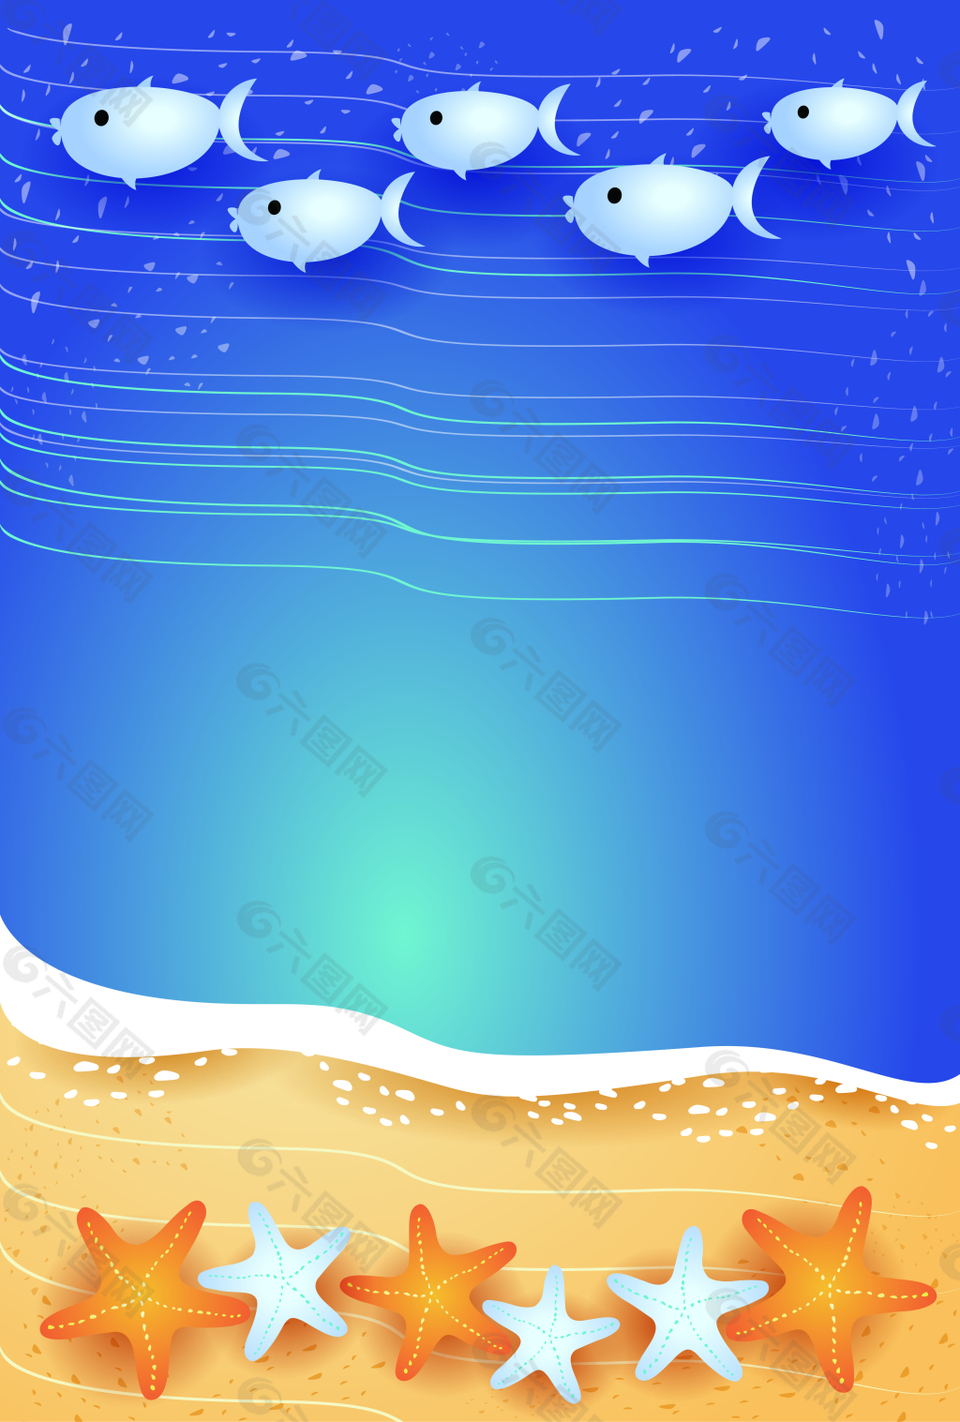 卡通矢量儿童画海洋风景背景